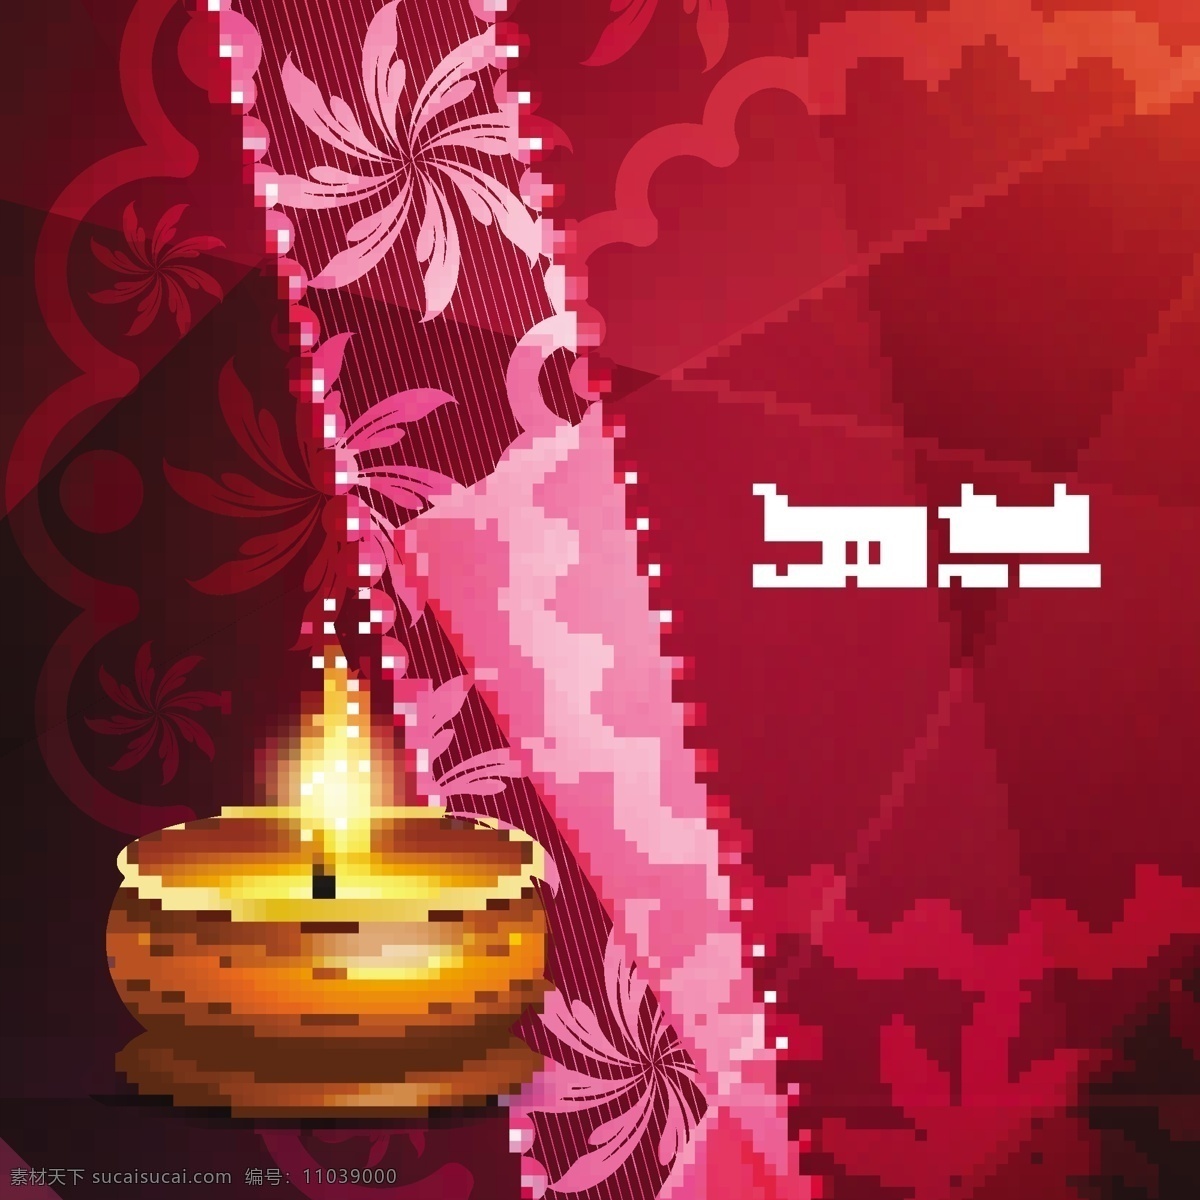 排 灯节 红色 背景 上 一个 现实 蜡烛 背景光 排灯节 快乐 灯 印度 庆典 宗教节日 假日 火焰 装饰 灯光 年 文化 传统的问候